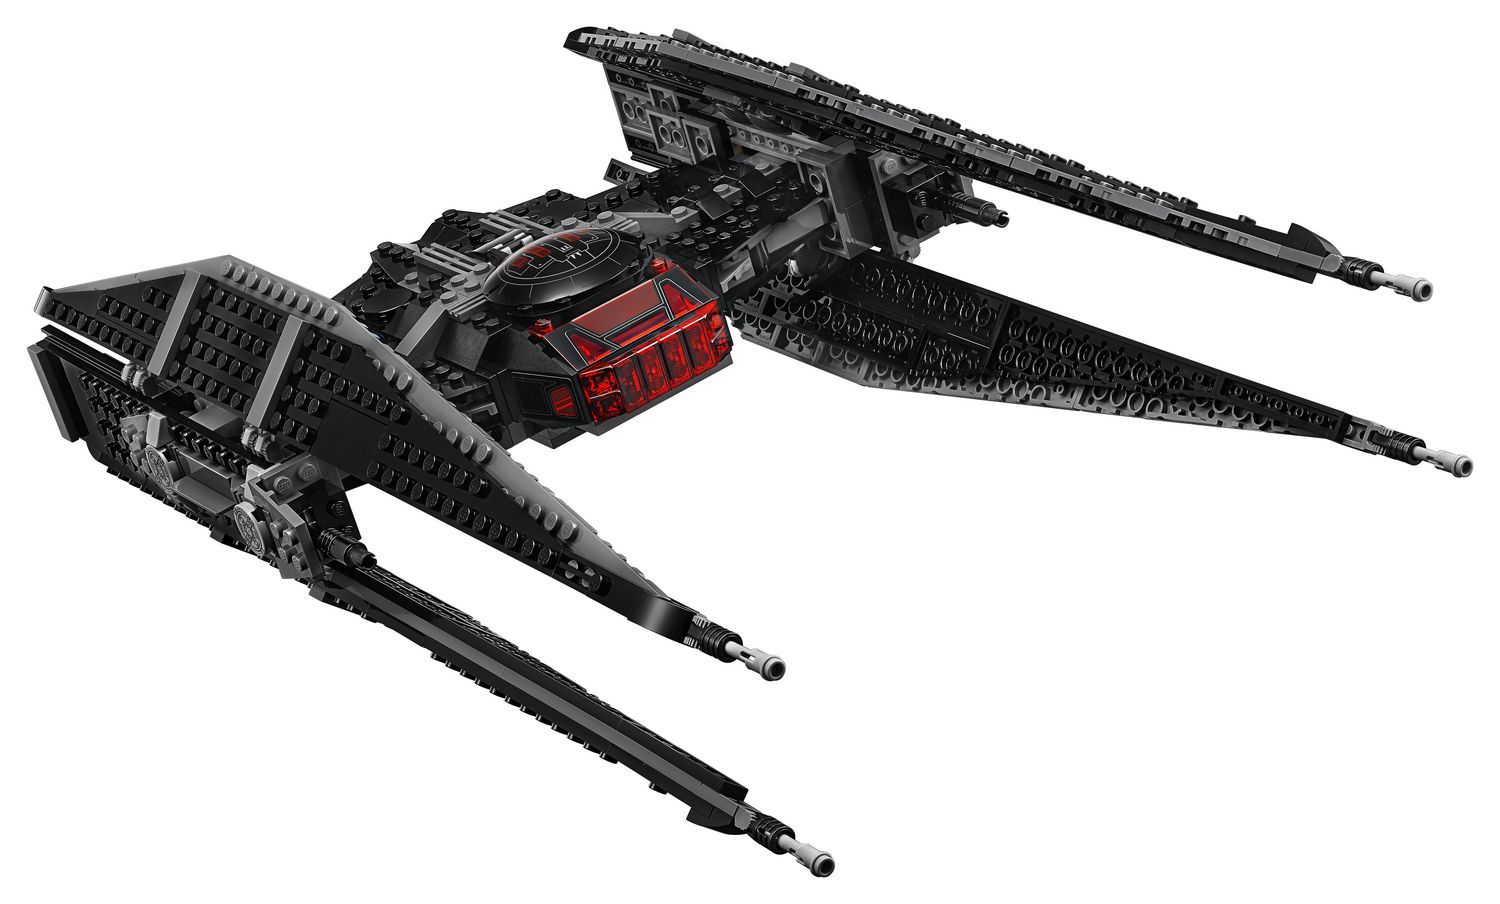 LEGO Star Wars Kylo Ren's TIE Fighter 75179 Toy Building Kit (630 